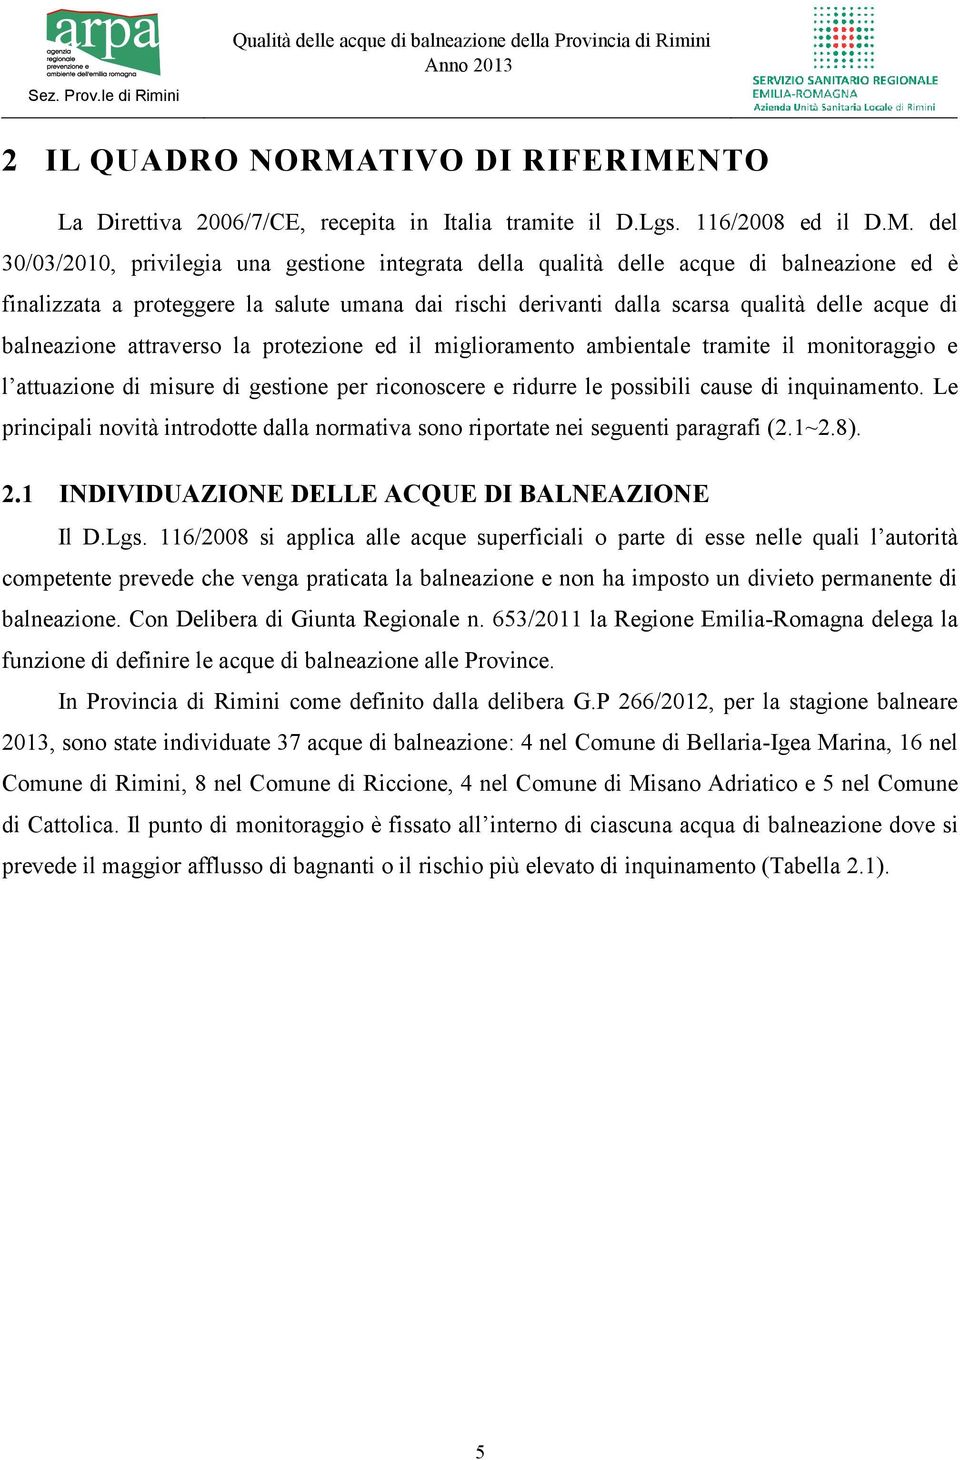 NTO La Direttiva 2006/7/CE, recepita in Italia tramite il D.Lgs. 116/2008 ed il D.M.